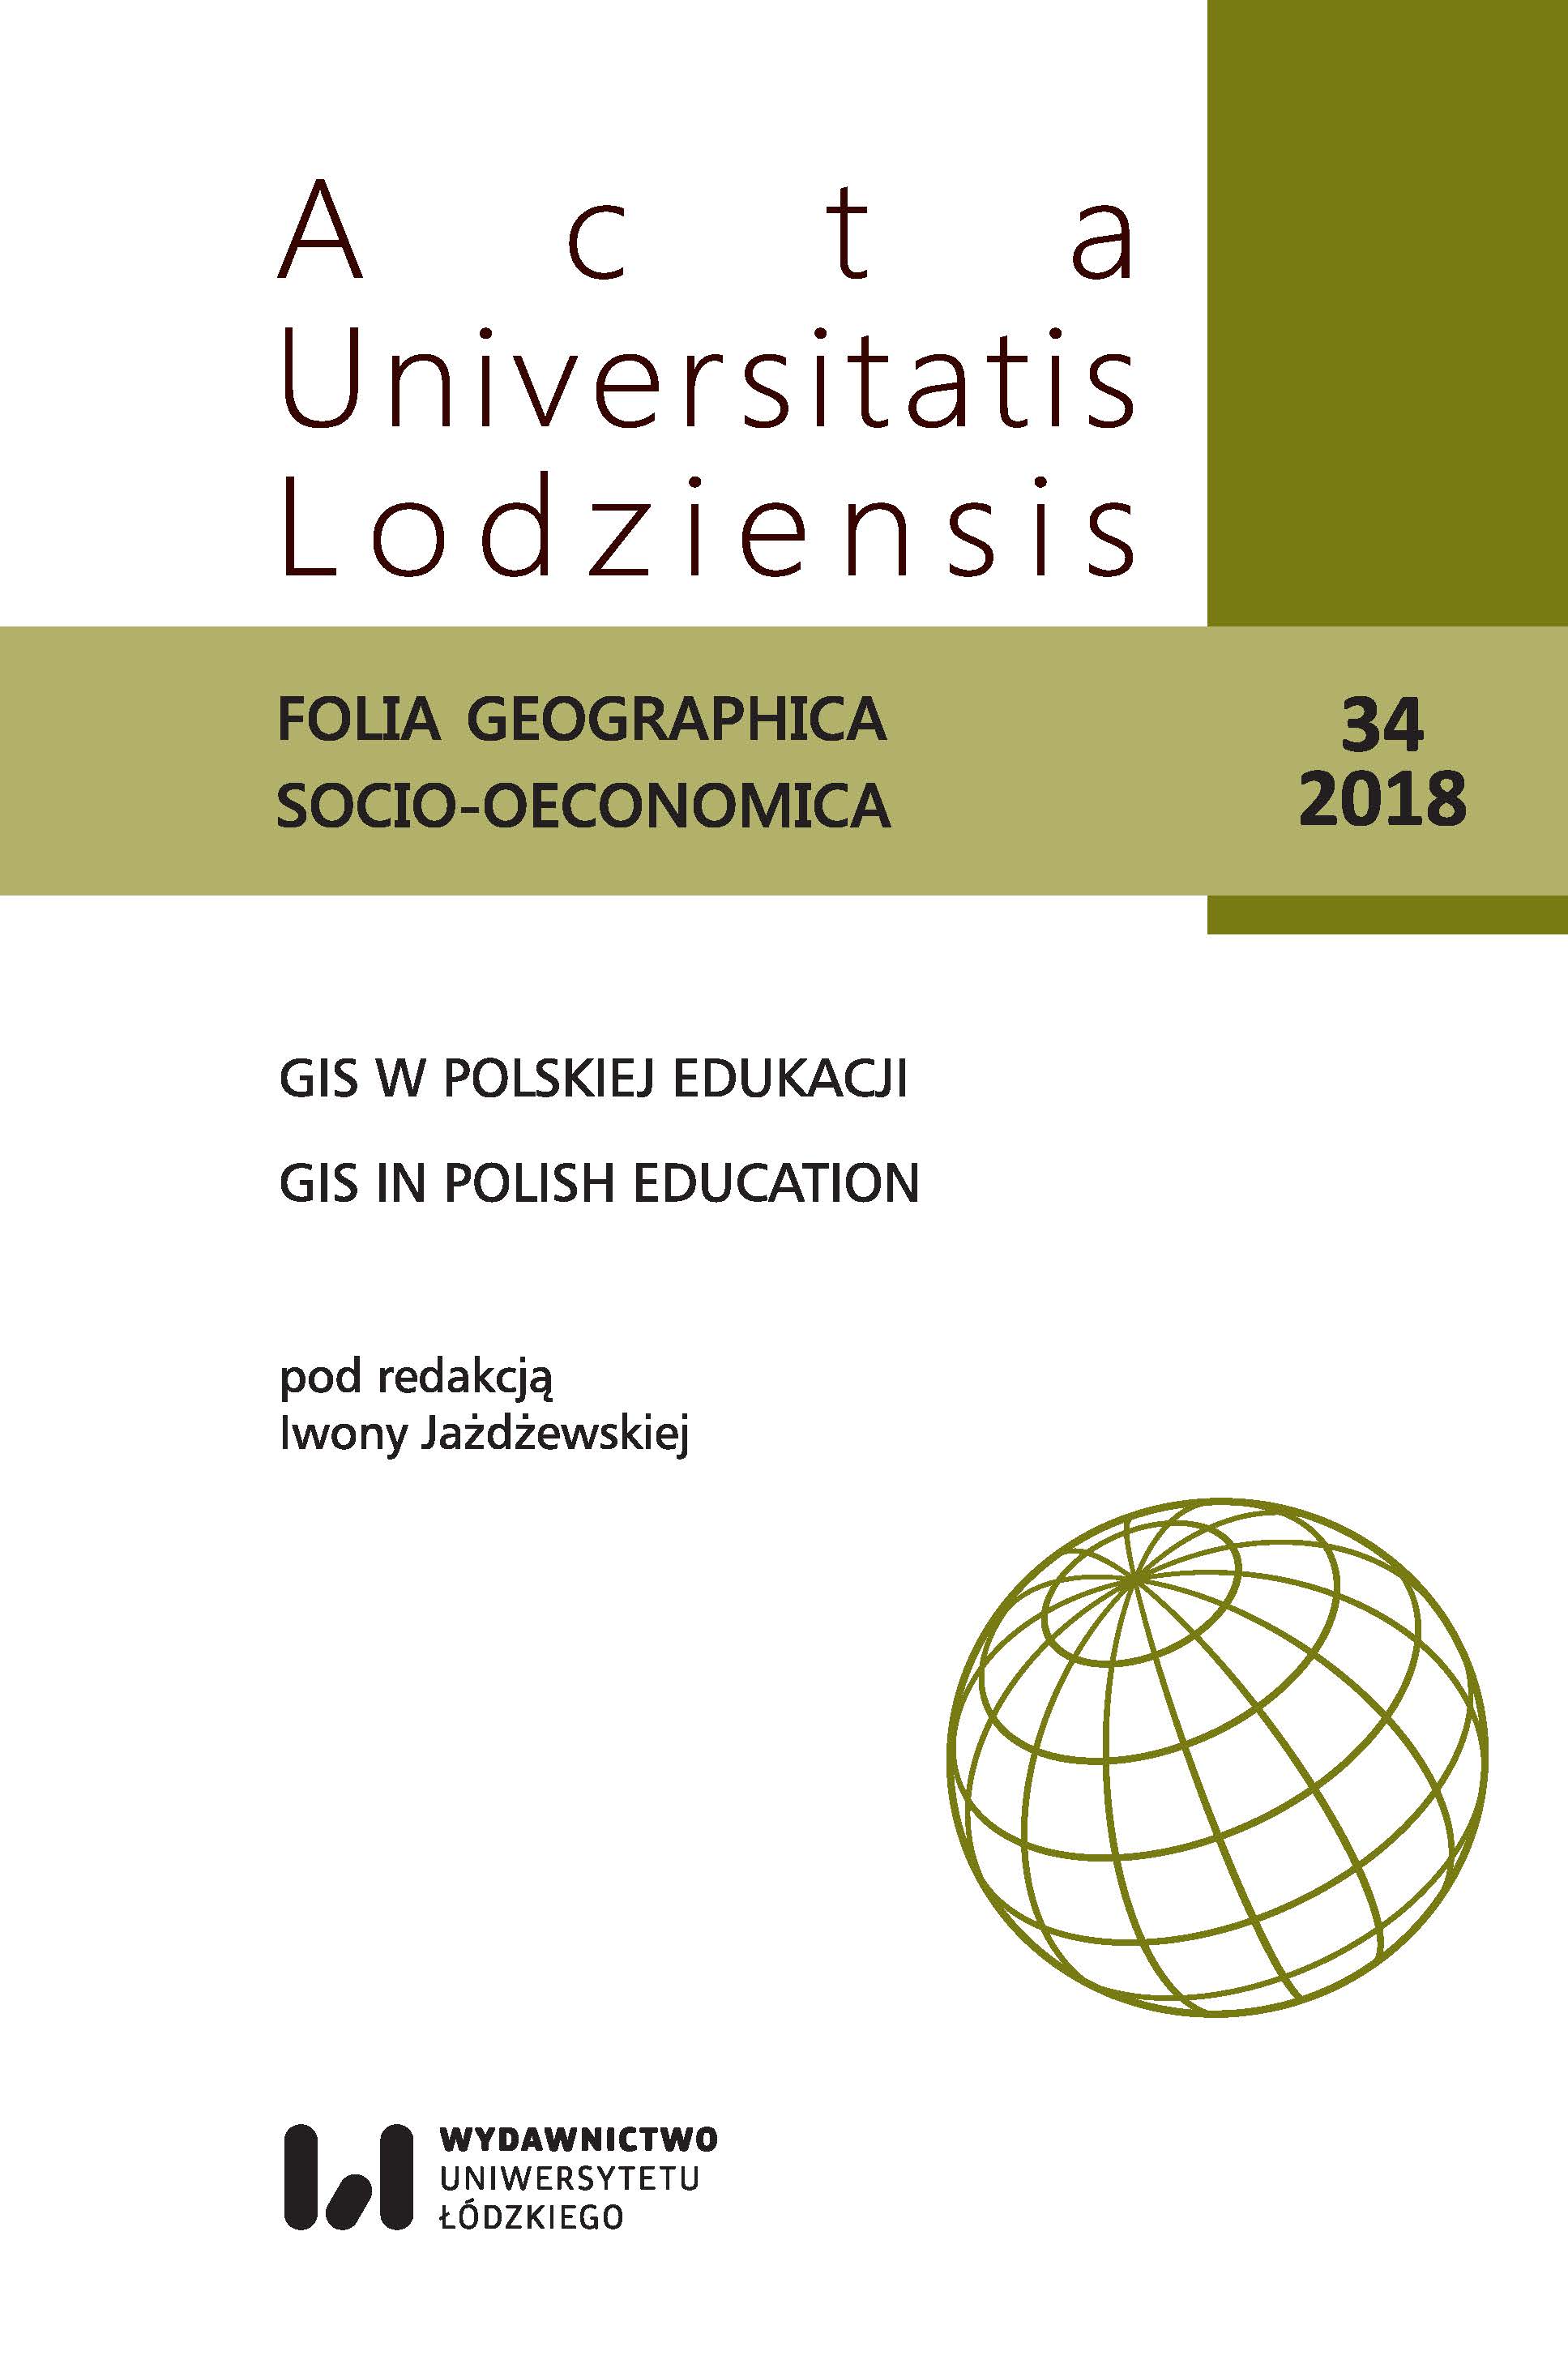 Sprawozdanie z II Ogólnopolskiej Konferencji „GIS w Edukacji”, 14–15 czerwca 2018 roku w Łodzi